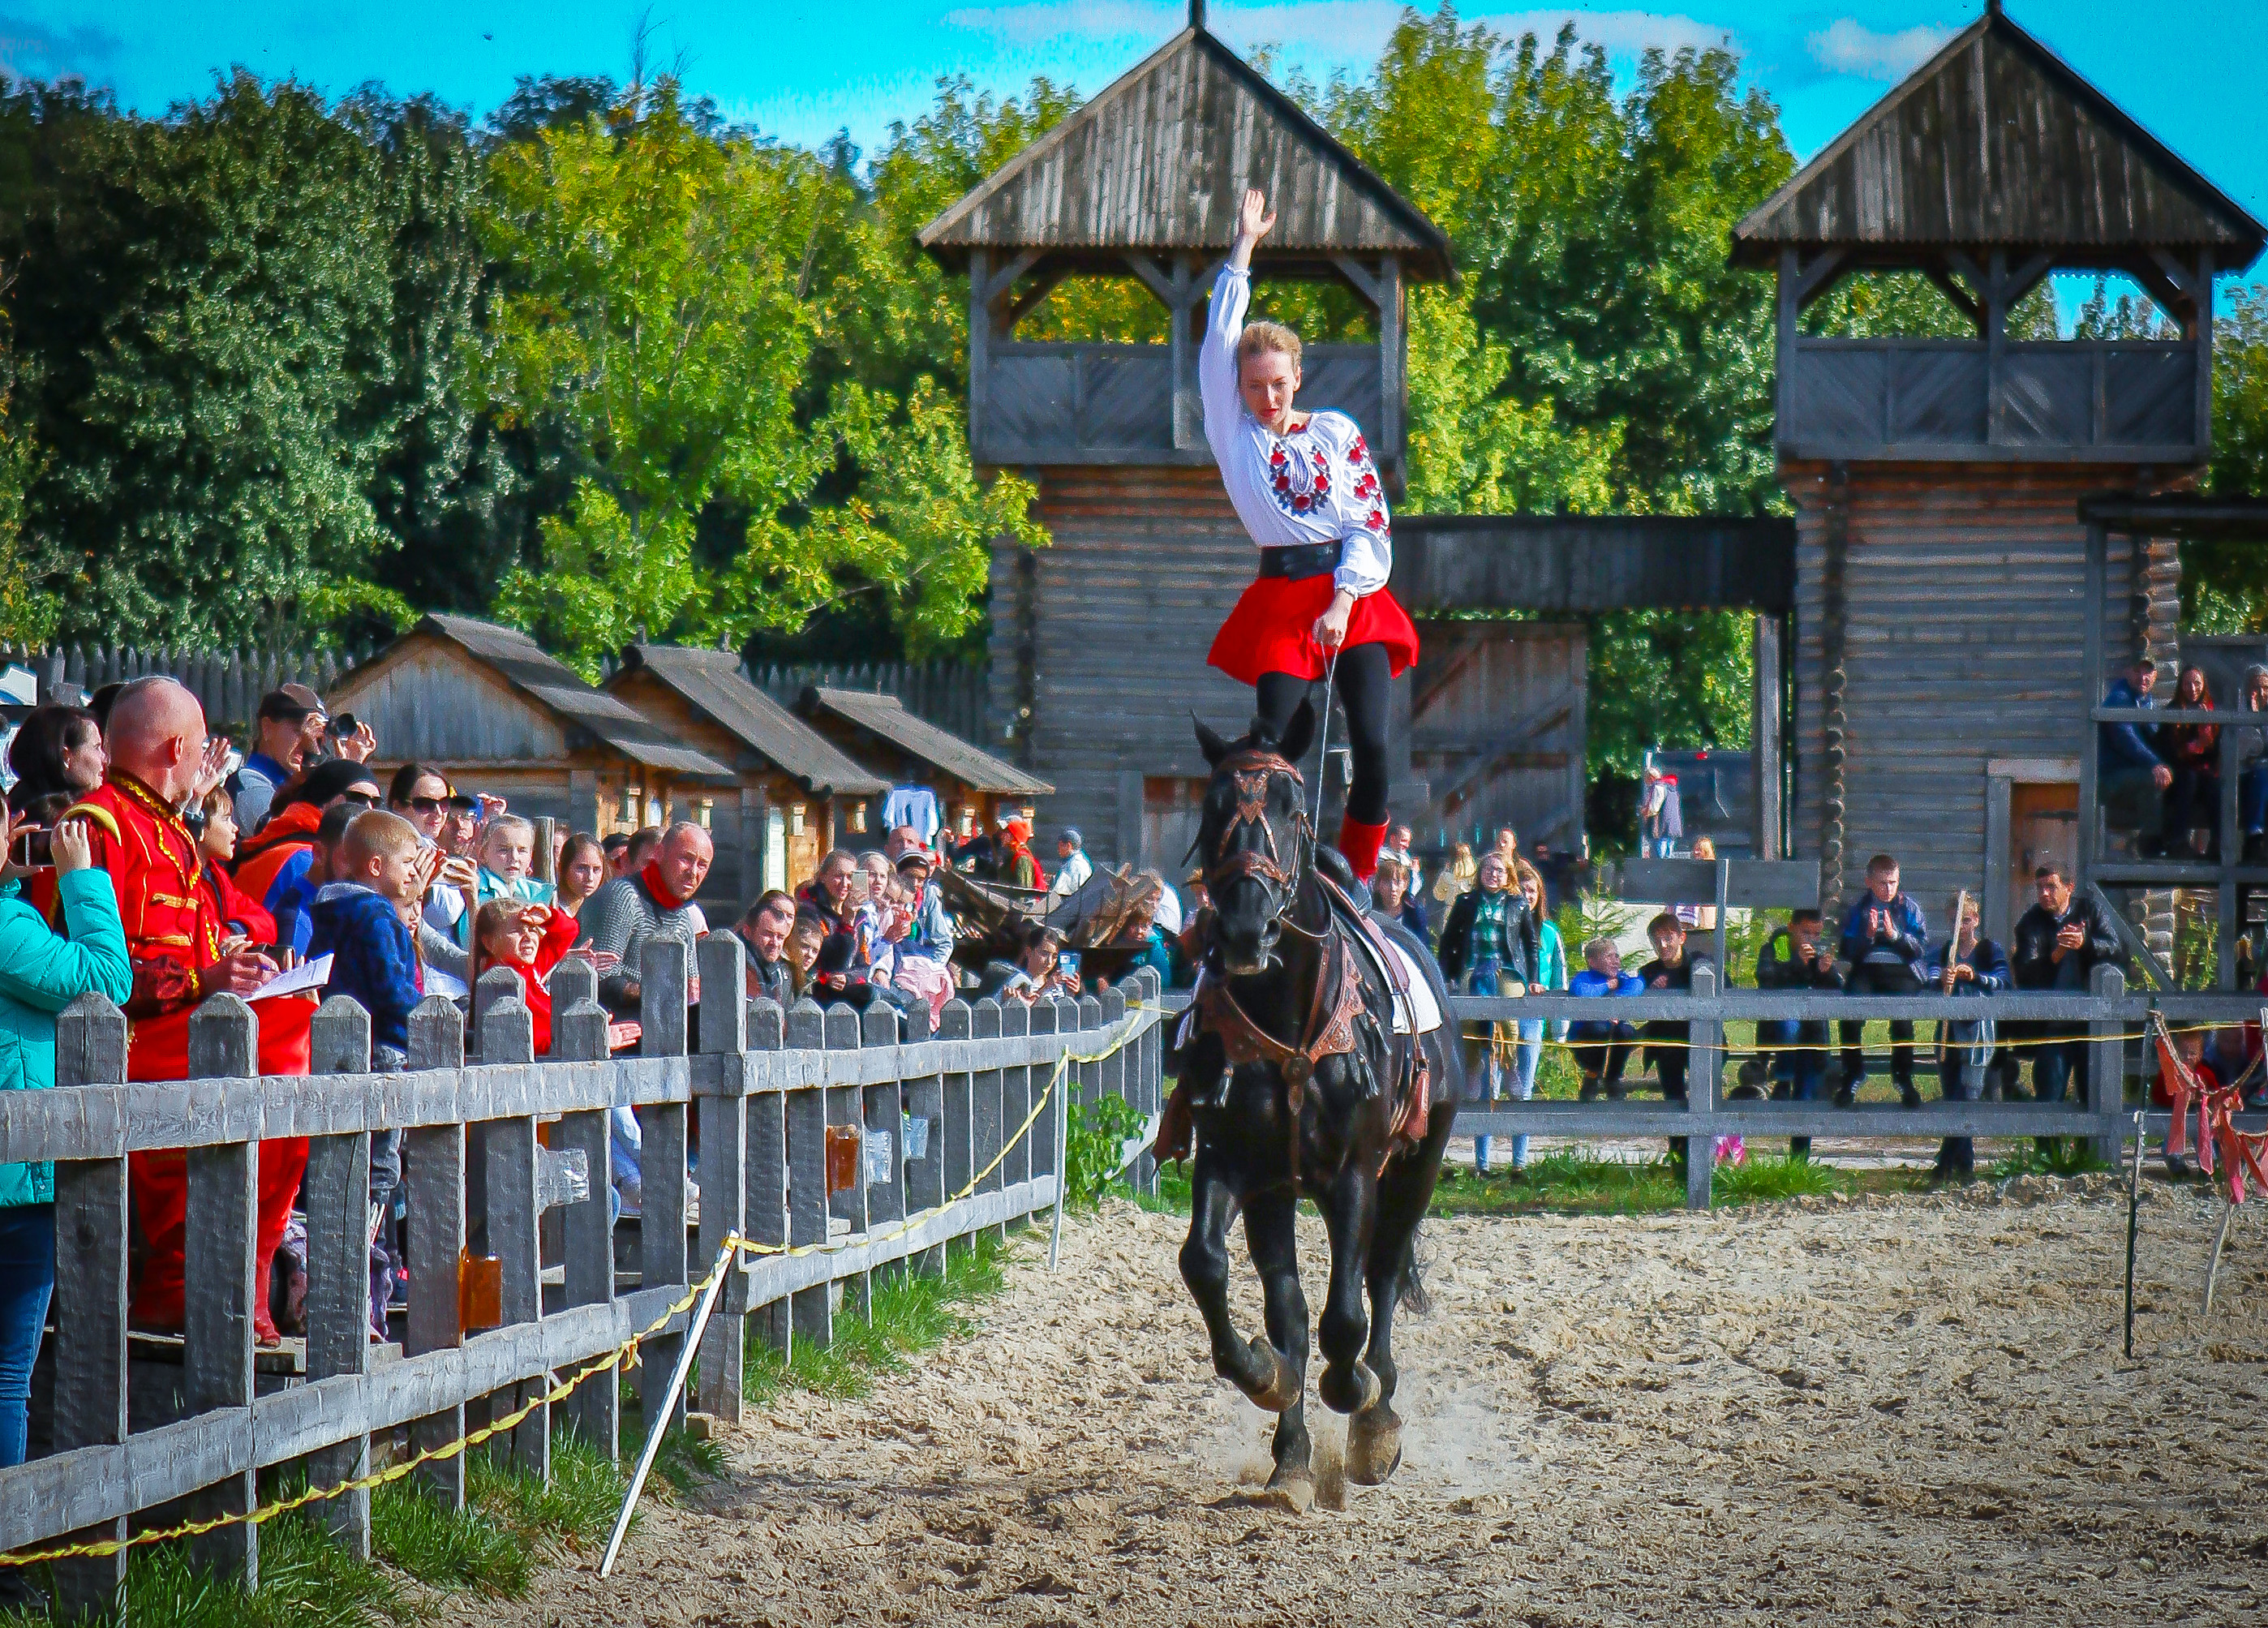 Под Киевом состоялся фестиваль конно-трюкового искусства “Кентавры”